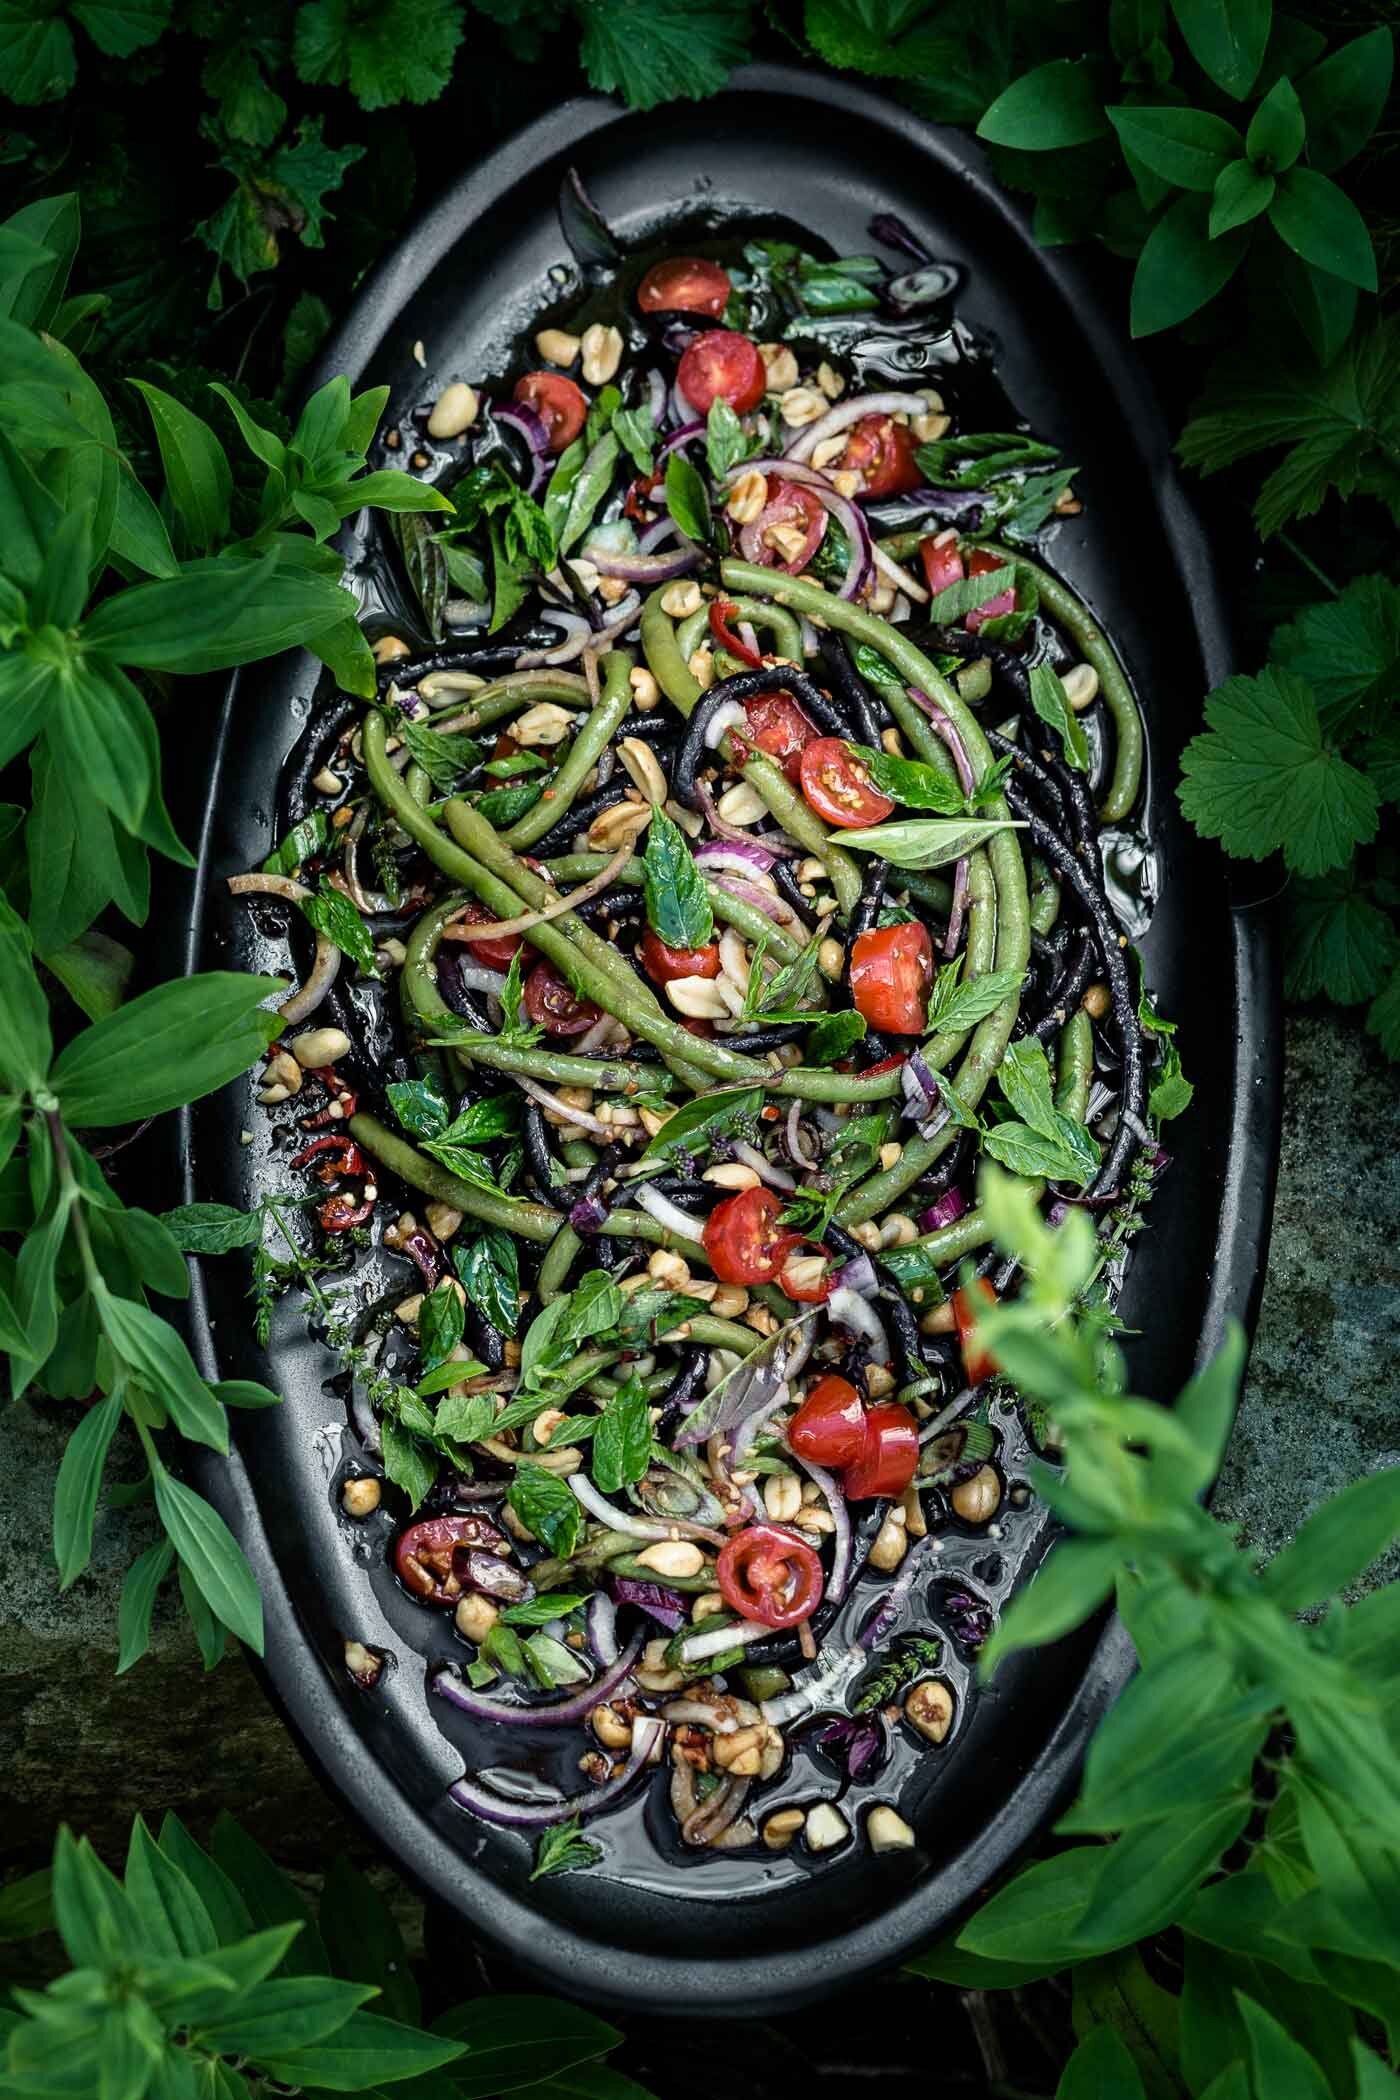 schlangenbohnen-salat-schlangenbohnen-dicke-bohnen-rezept-veggielicious-food-fotografie_002-dt-hoch.jpg